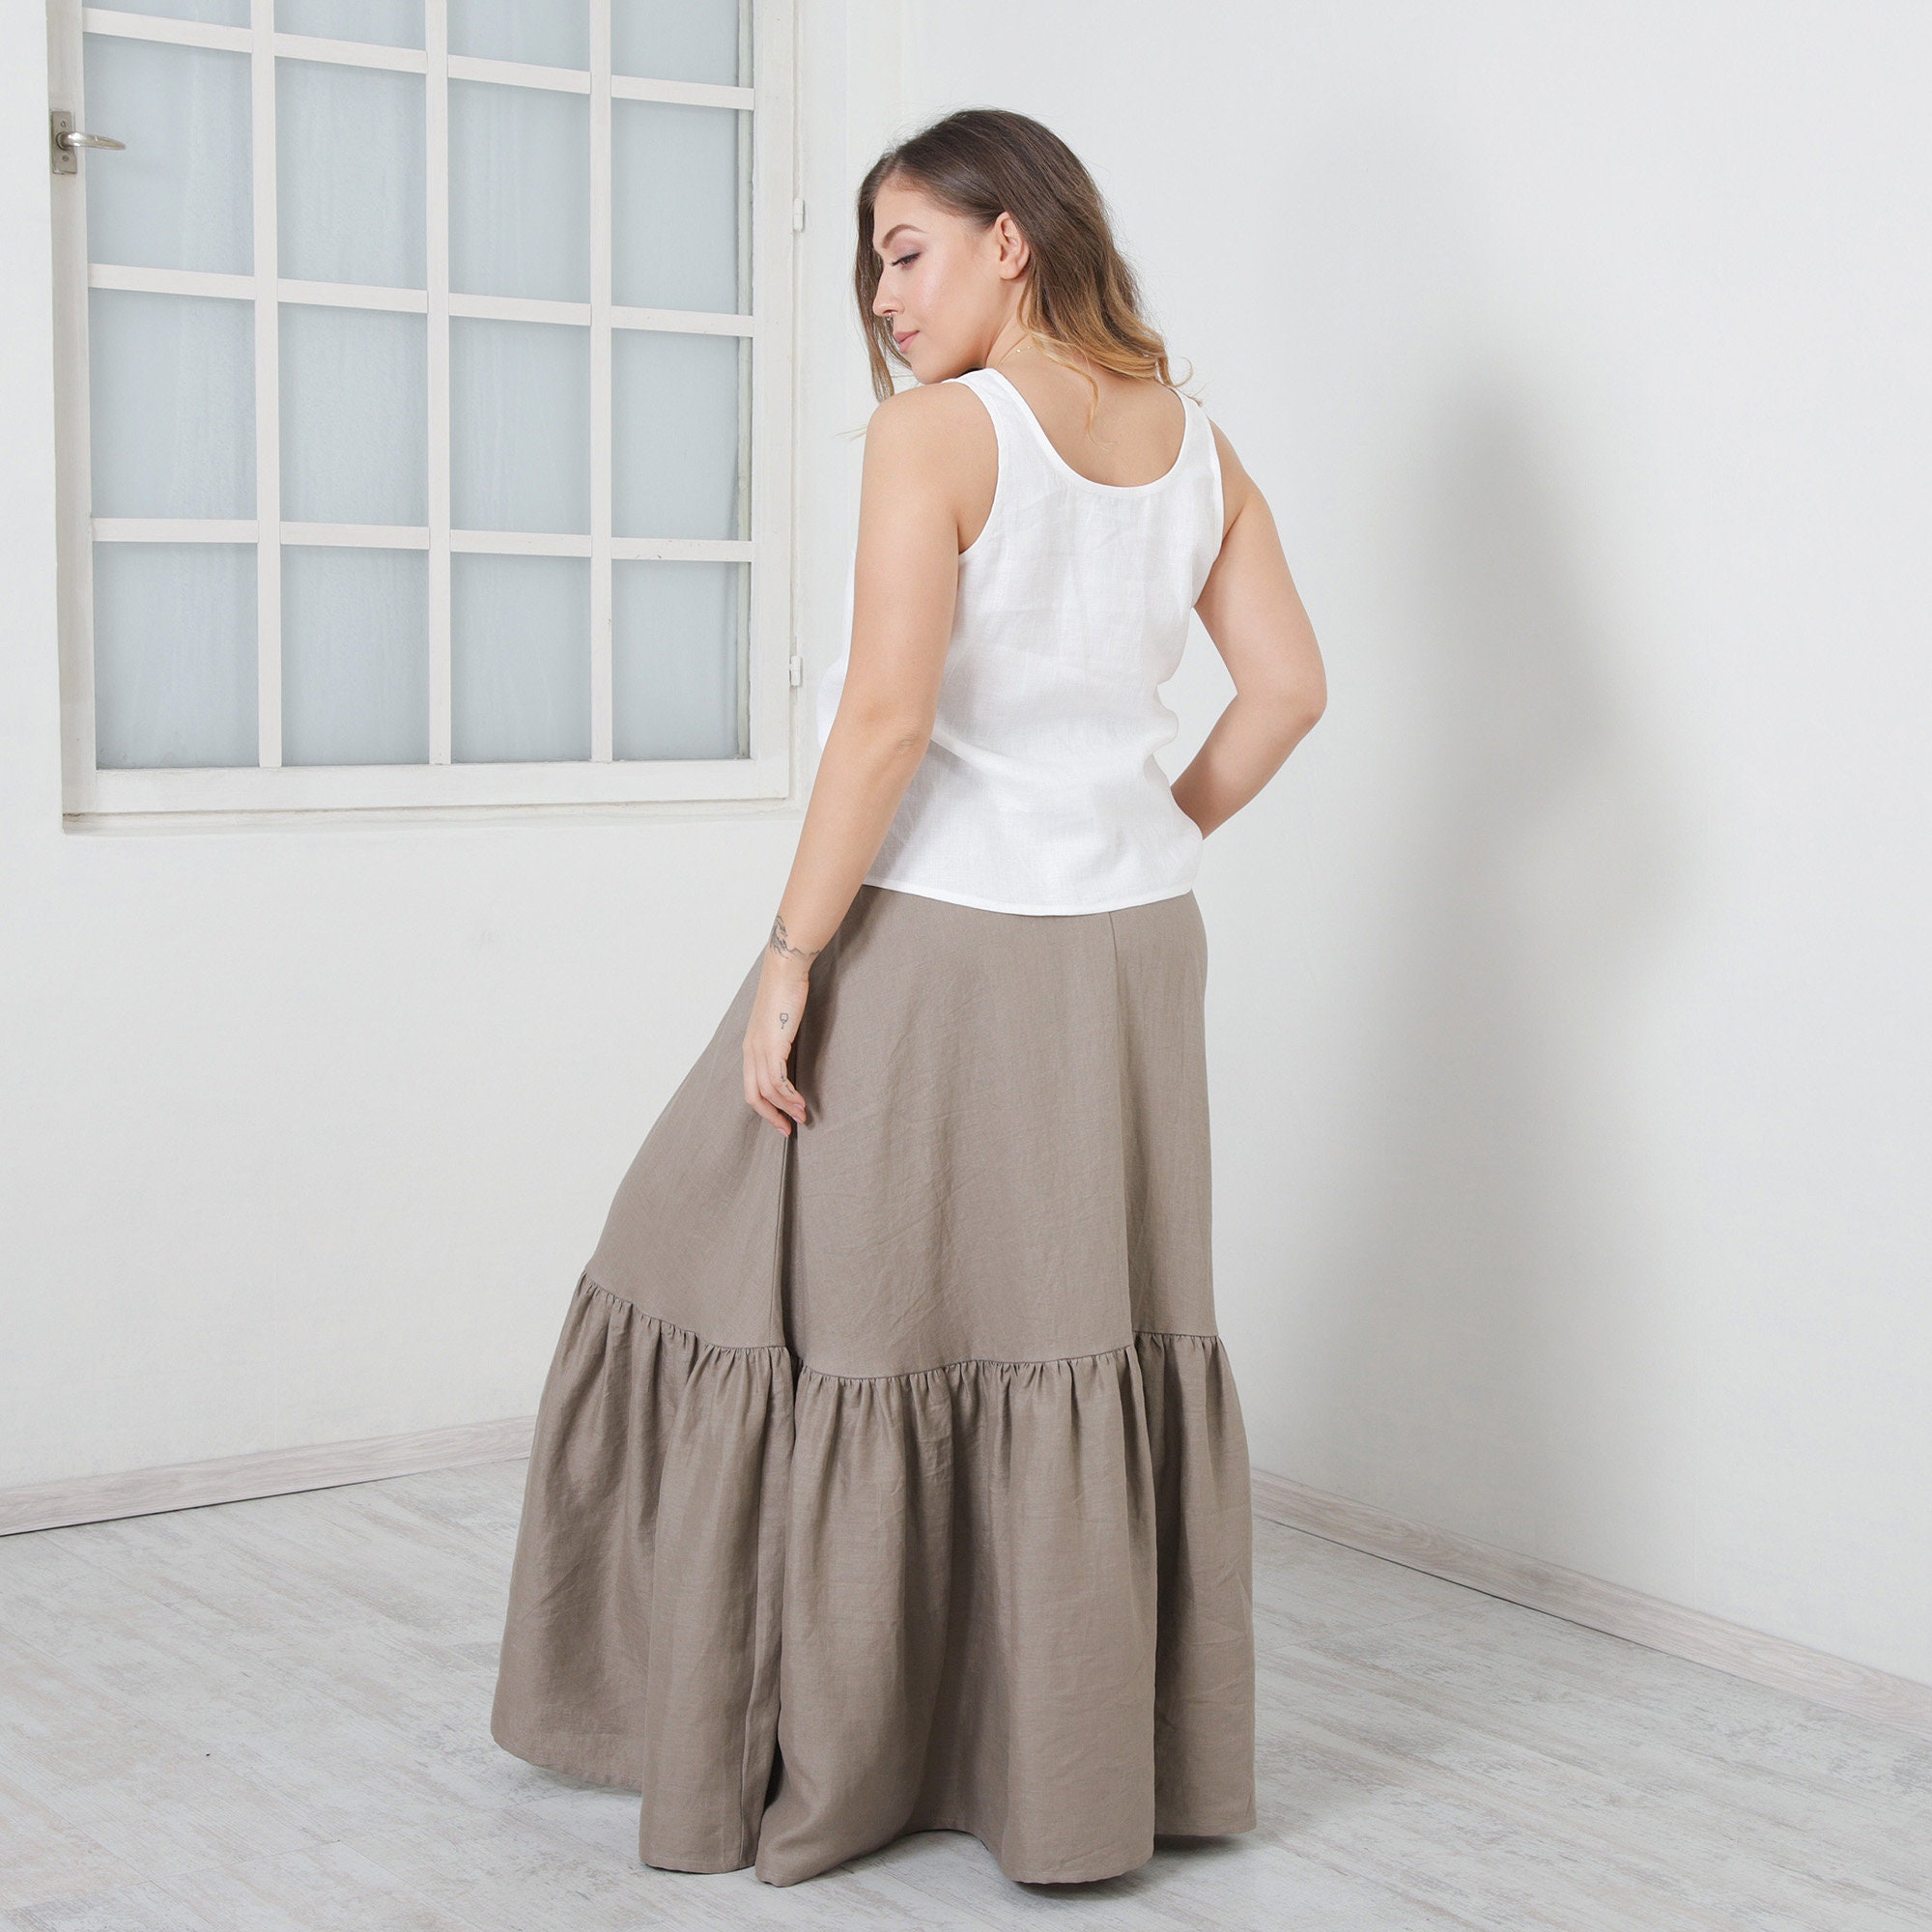 Long Linen Skirt TONI Full Circle Skirt Beautiful Skirt With | Etsy